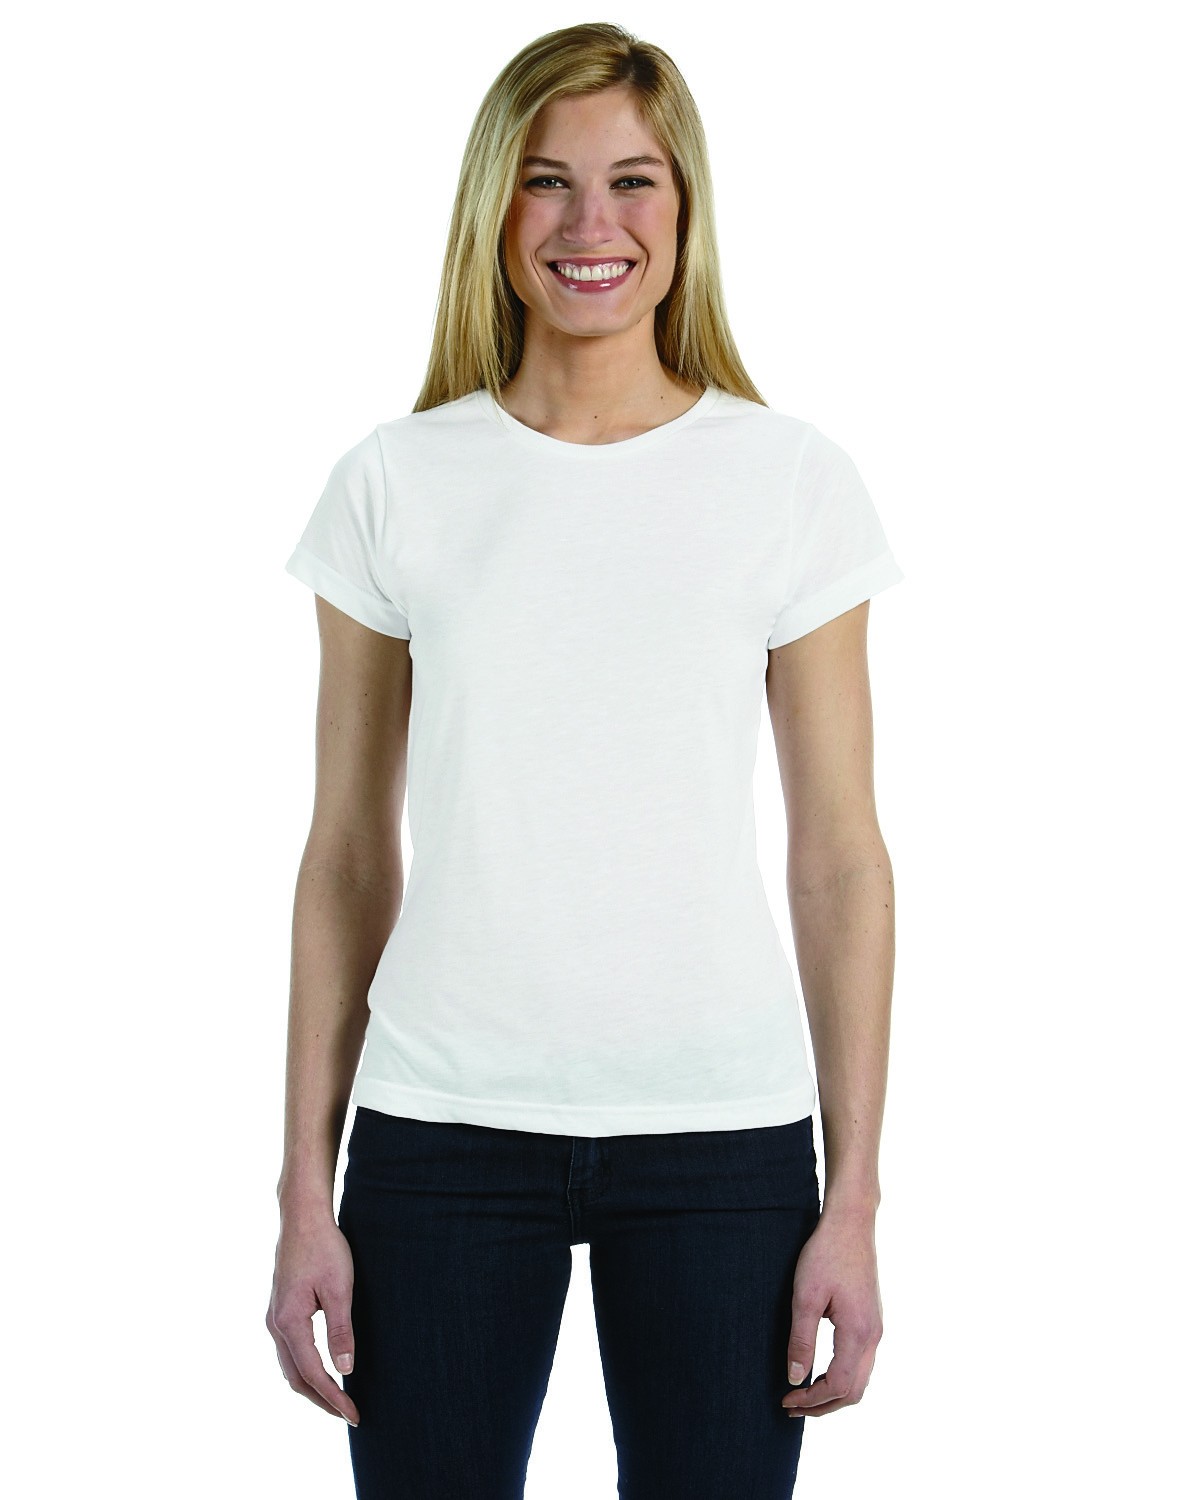 Sublivie 1510 Ladies' Sublimation T-Shirt